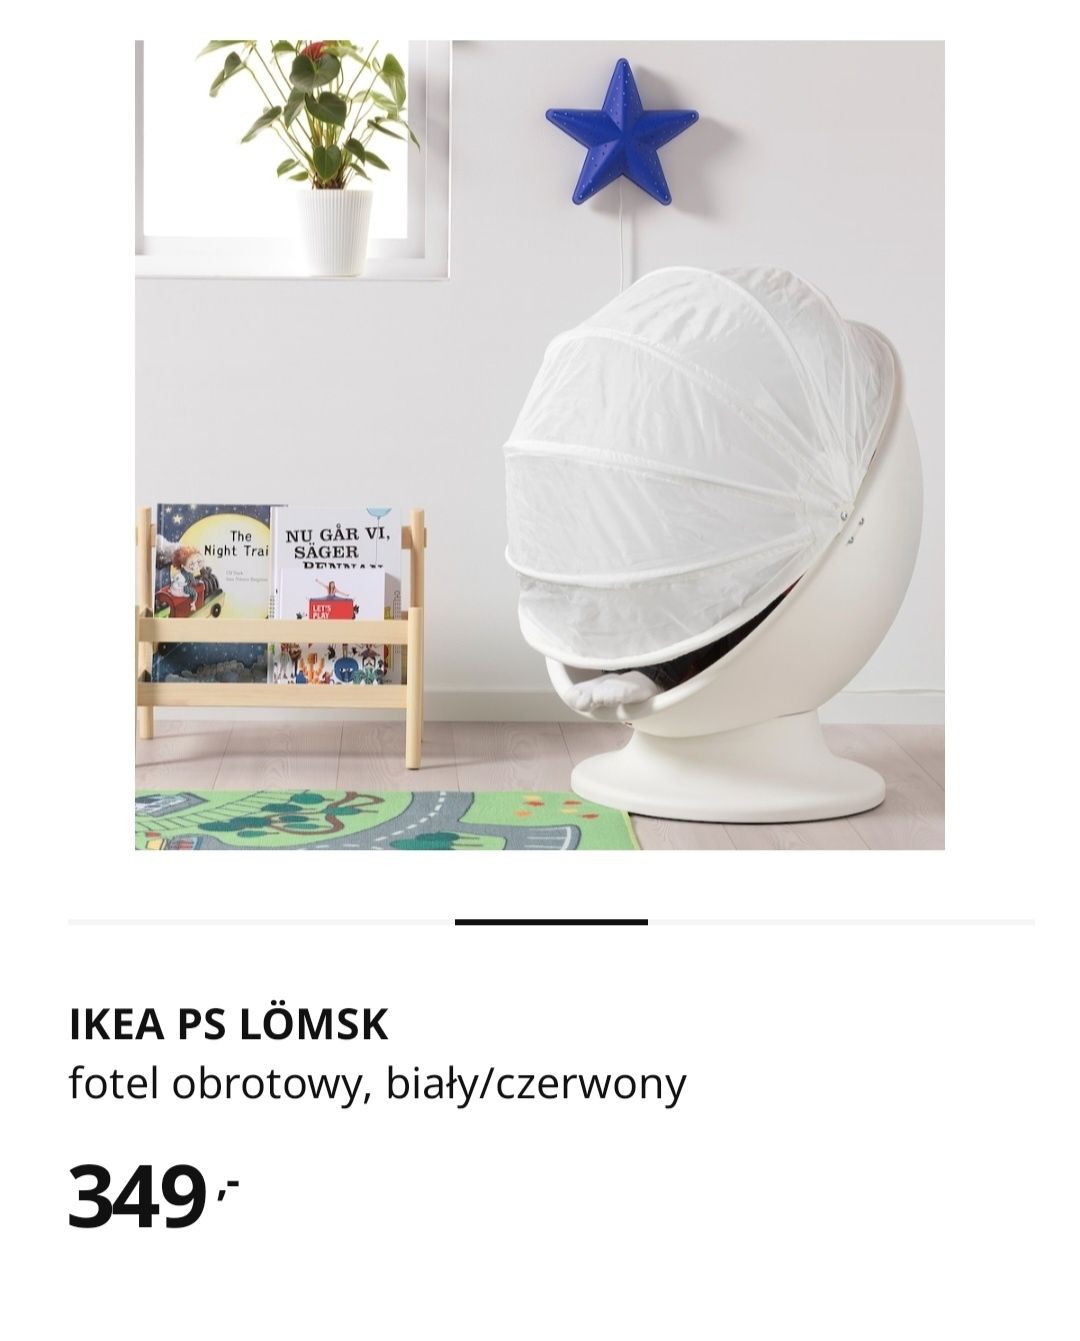 Fotel obrotowy IKEA